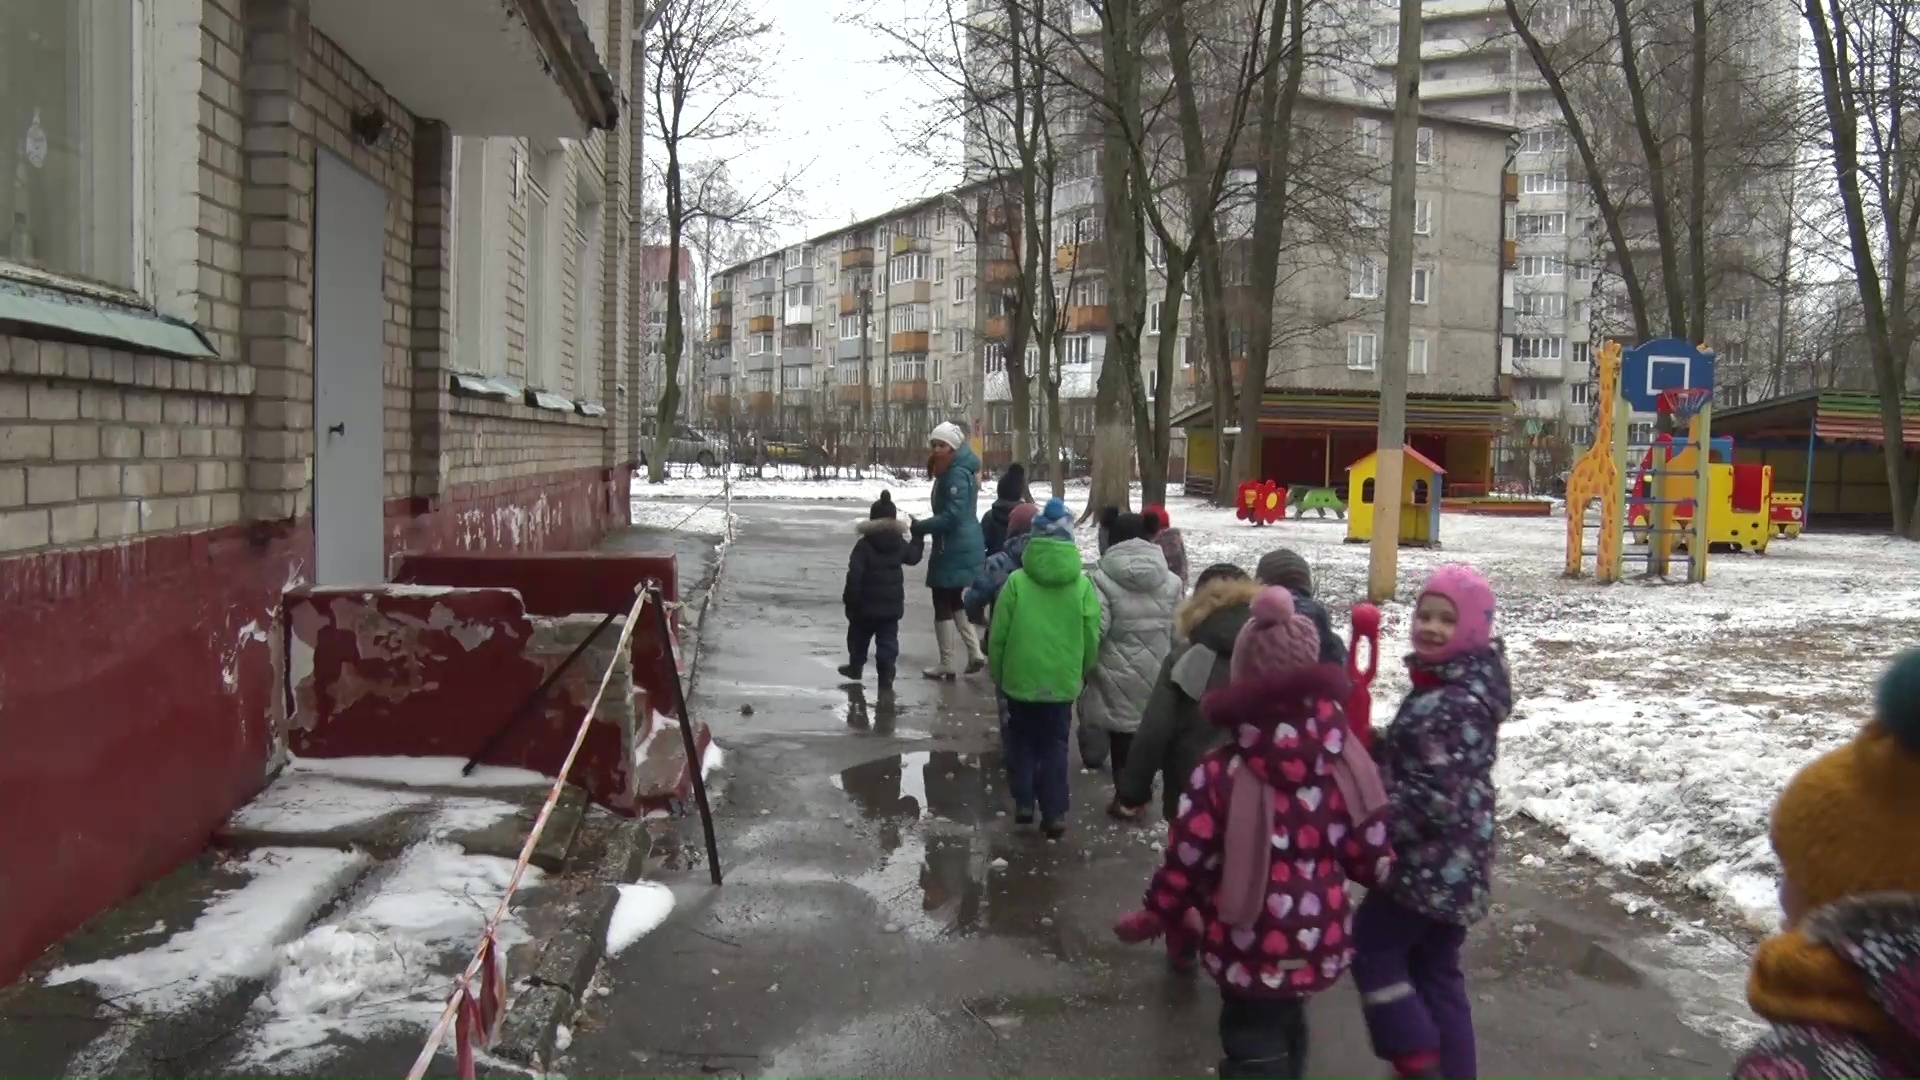 Детям пришлось прятаться на веранде: подробности хулиганских выходок подростков в ярославском детском саду